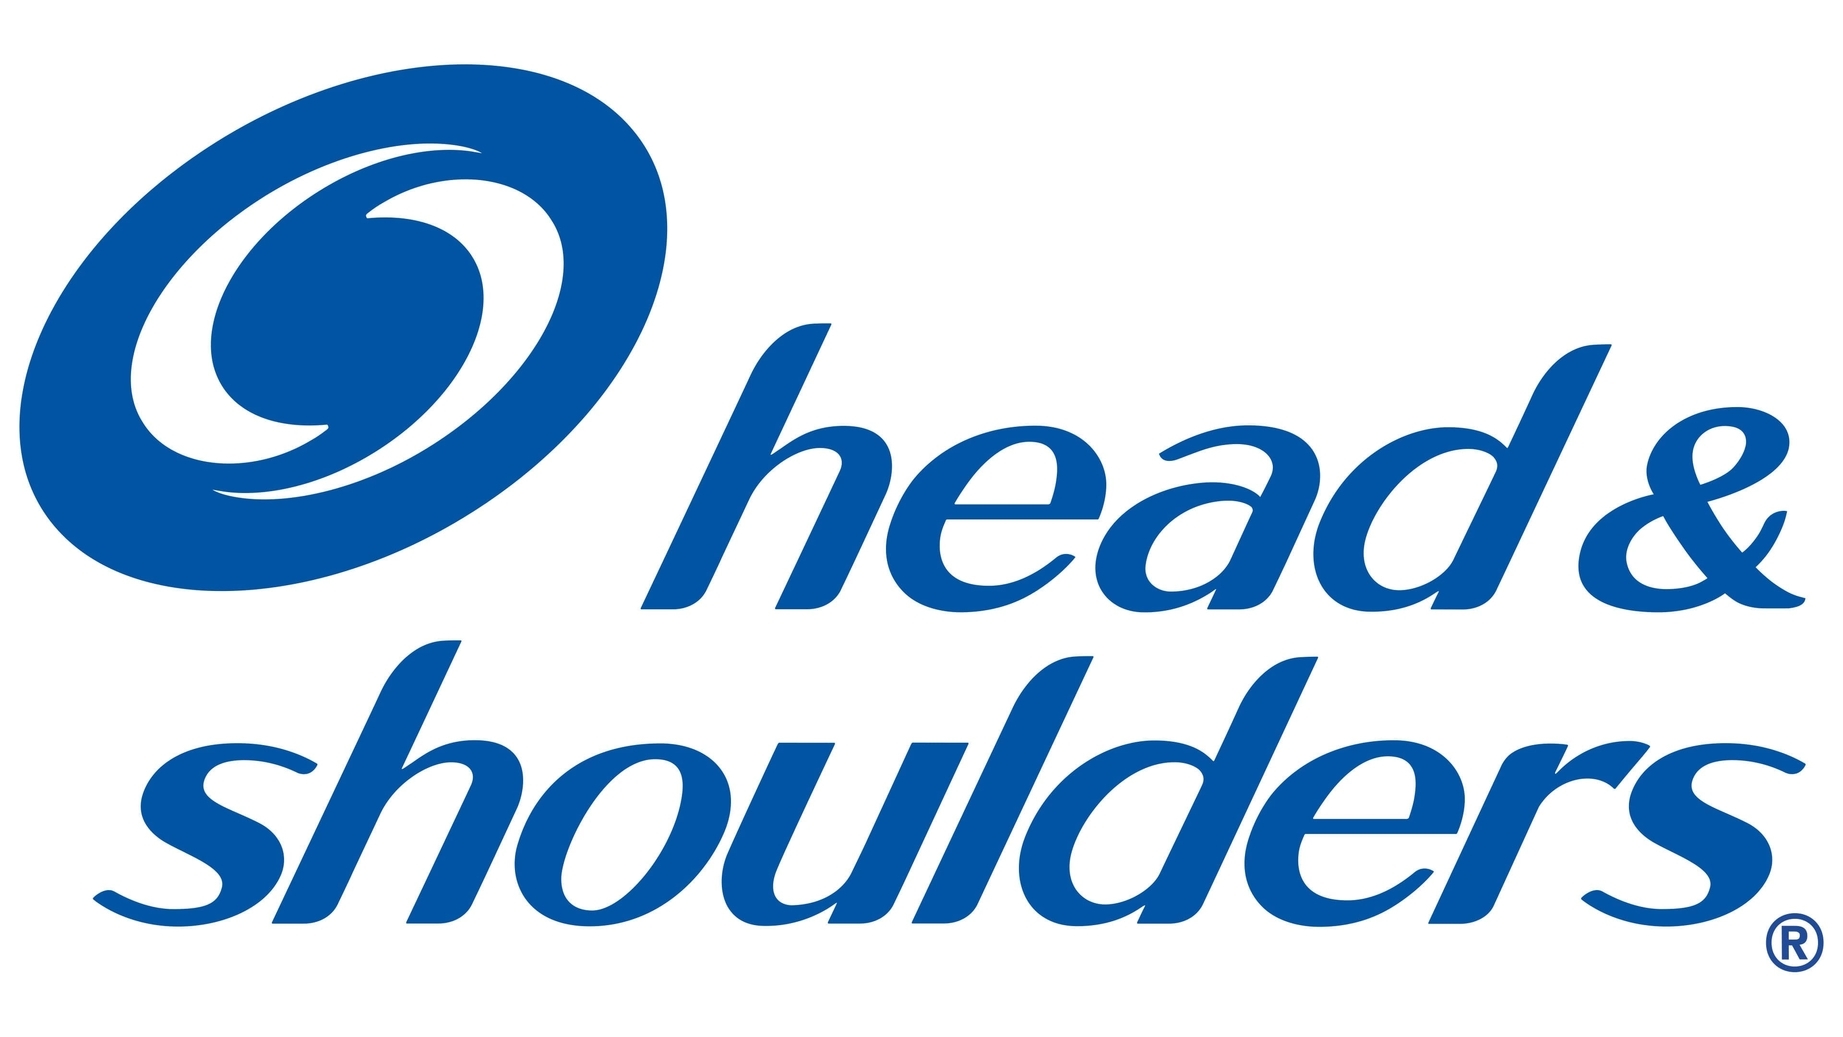 Head shoulders sign 2019 present